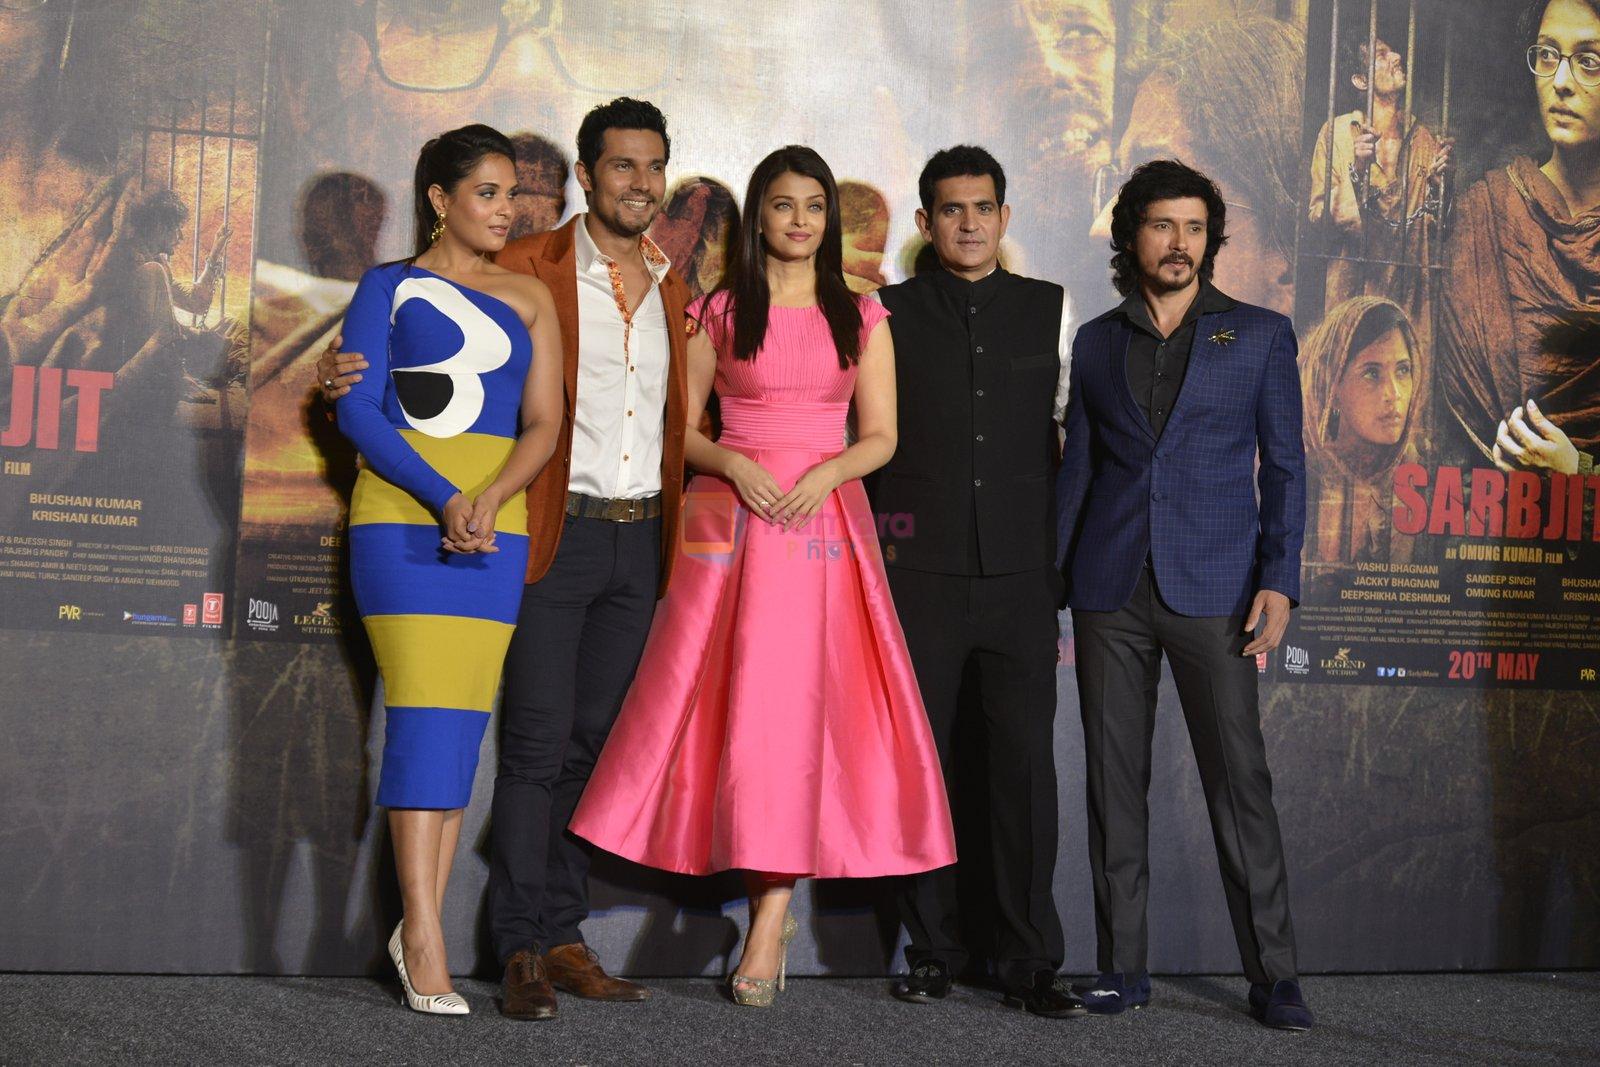 Richa Chadha, Randeep Hooda, Aishwarya Rai Bachchan, Darshan Kumaar at Sarbjit Trailer launch in Mumbai on 14th April 2016